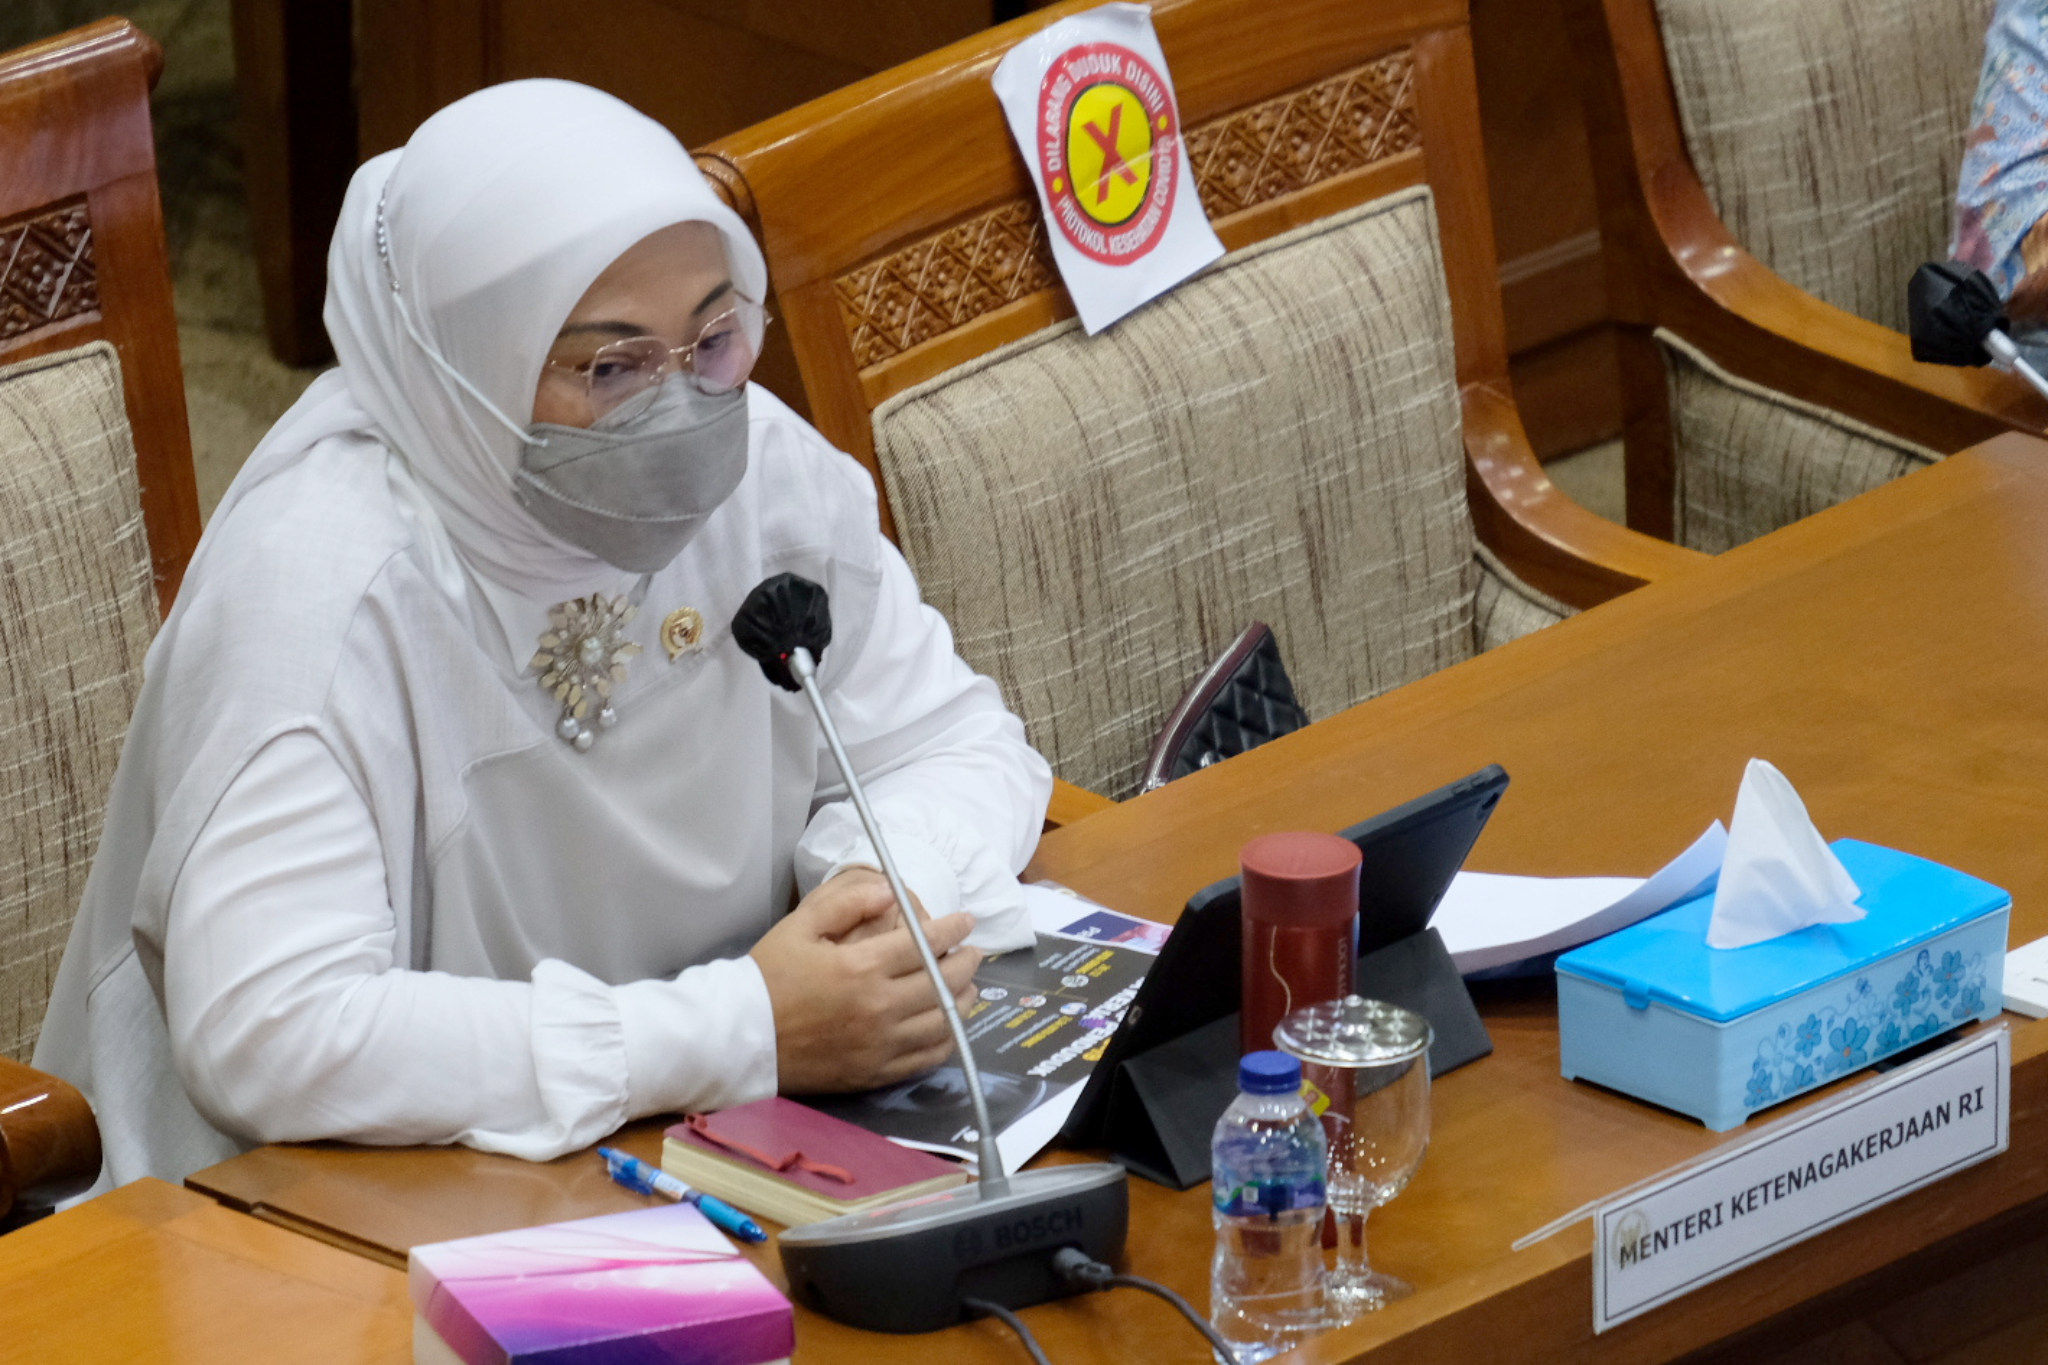 <p>Menteri Ketenagakerjaan, Ida Fauziyah menyampaikan laporan pada rapat kerja dengan Komisi IX DPR di kompleks Parlemen, Senayan, Jakarta, Senin, 15 Maret 2021. Foto: Ismail Pohan/TrenAsia</p>
